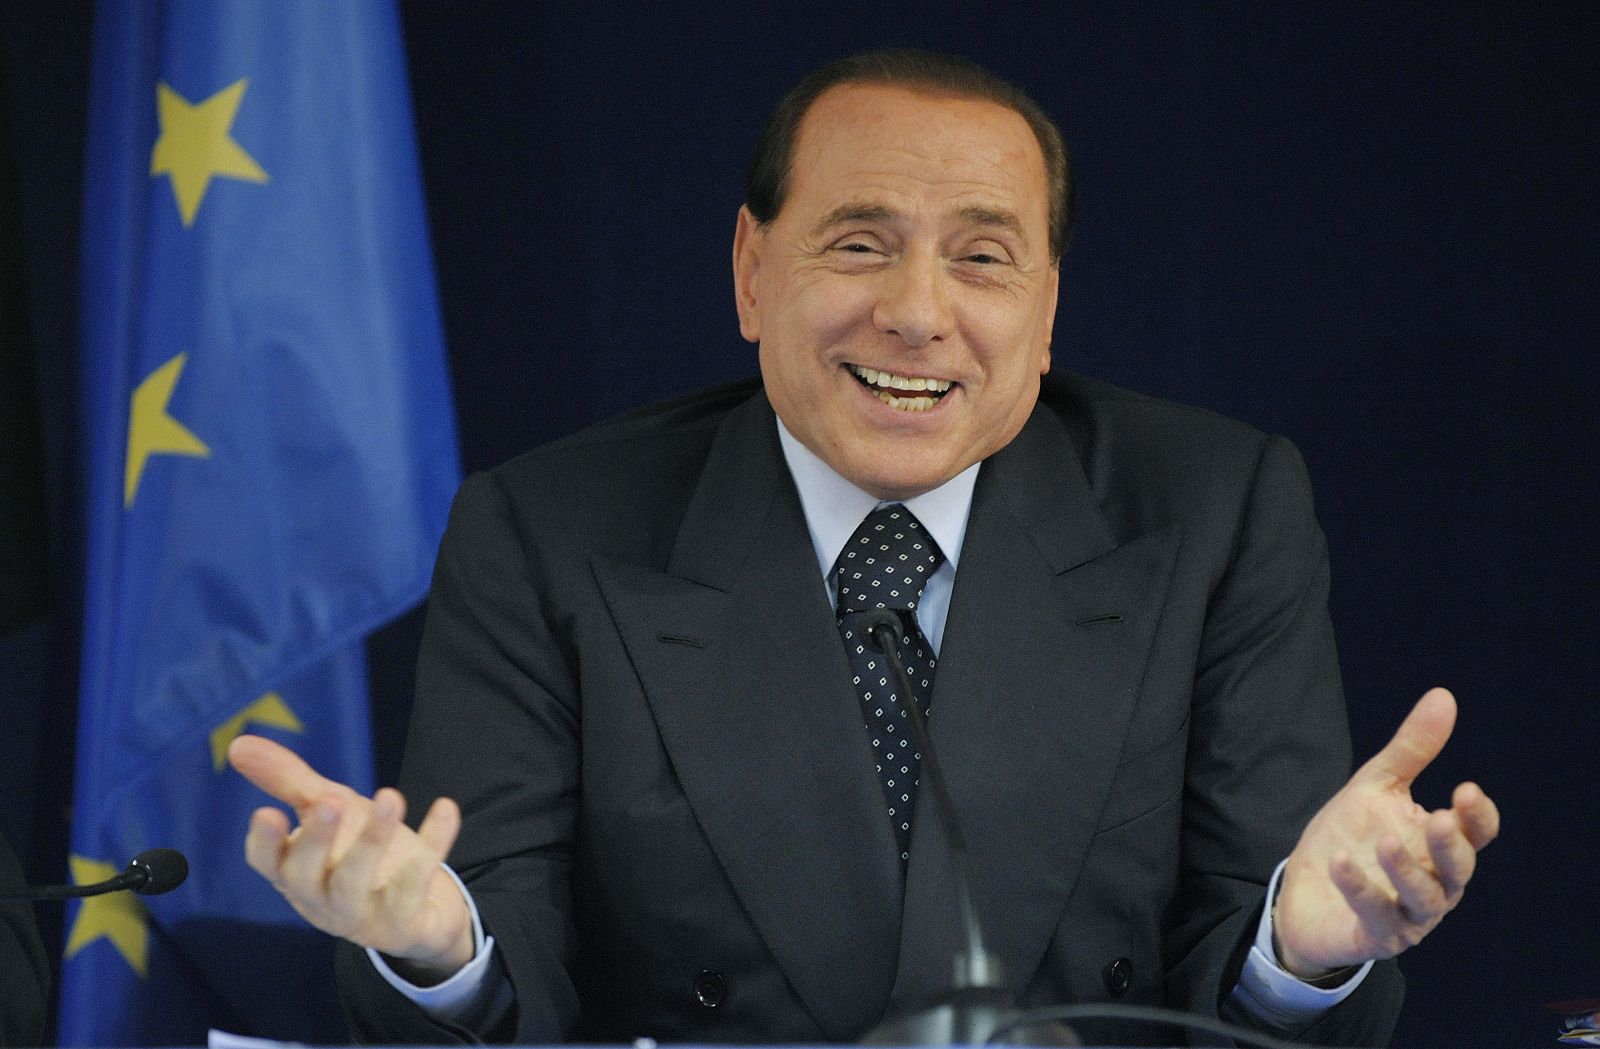 Primer Ministro Italiano, Silvio Berlusconi, en una conferencia de prensa en una cumbre de la EU, Bruselas (20/06/08)